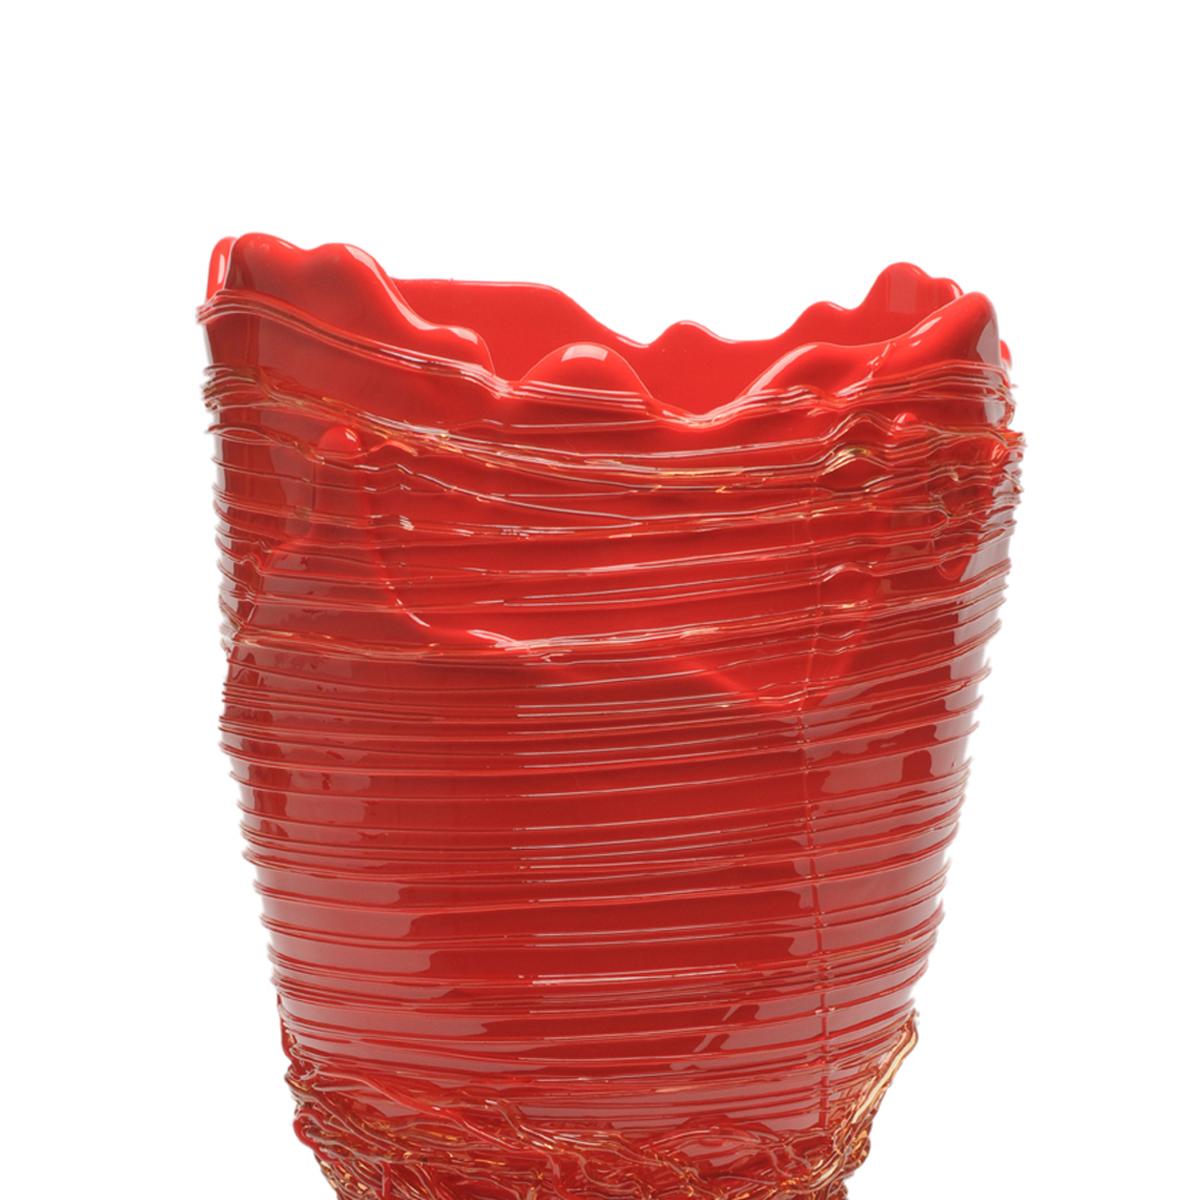 Vase Spaghetti, rouge.

Vase en résine souple conçu par Gaetano Pesce en 1995 pour la collection Fish Design.

Mesures : L ø 16cm x H 26cm

Autres tailles disponibles.

Couleurs : Rouge.
Vase en résine souple conçu par Gaetano Pesce en 1995